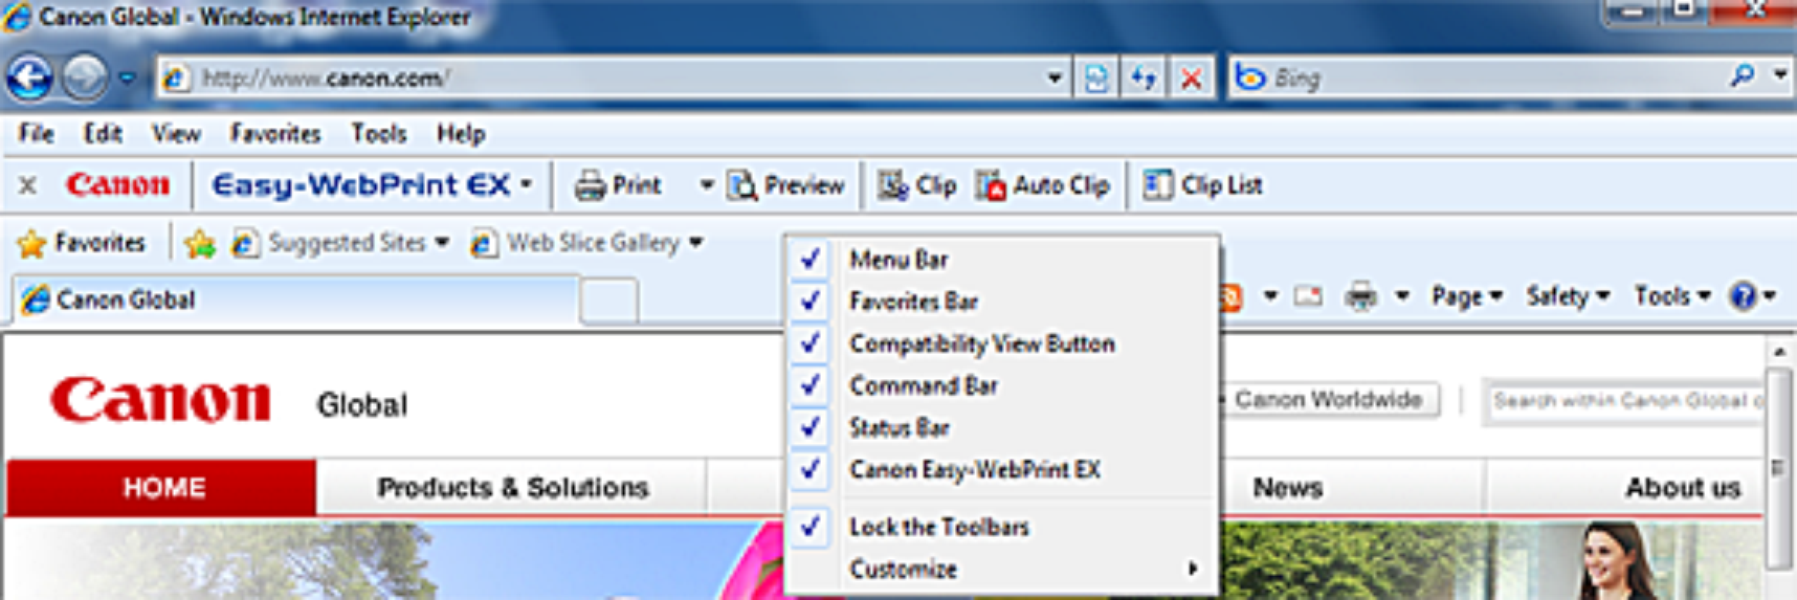 canon easy webprint ex for internet explorer 9